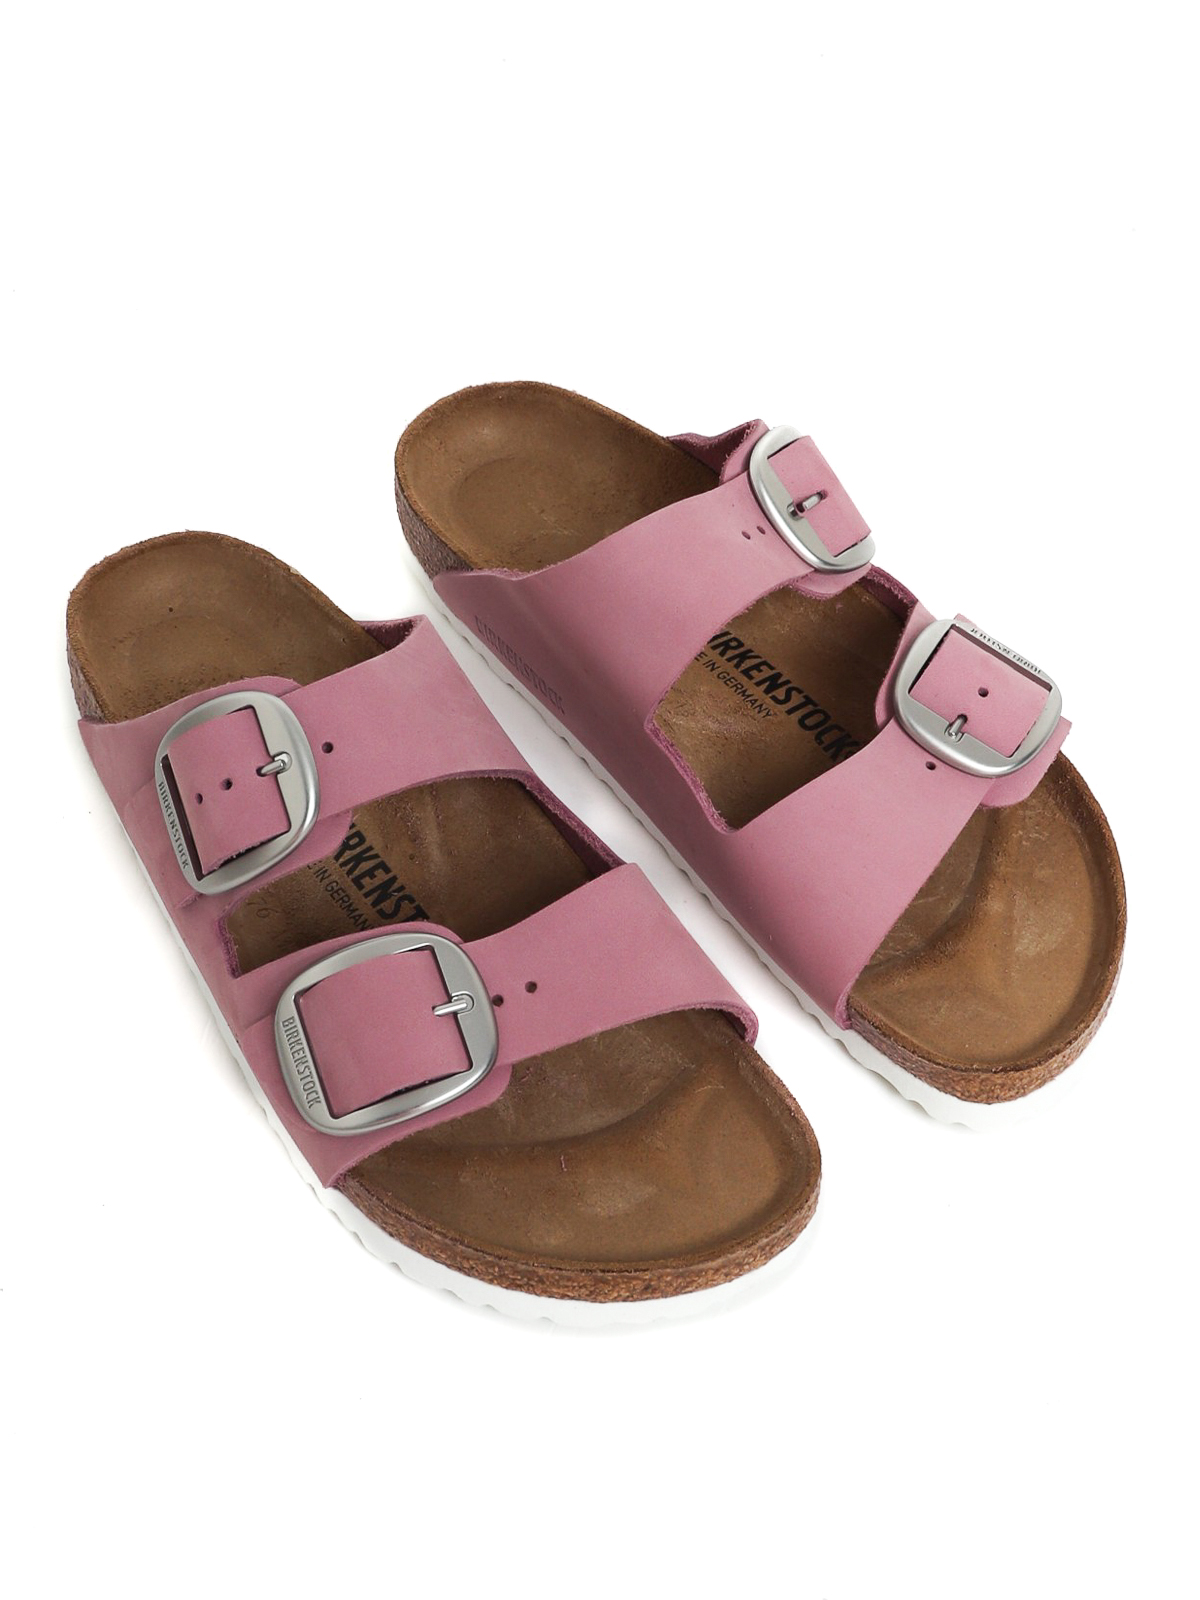 Shop Birkenstock Arizona Sandals In Pink